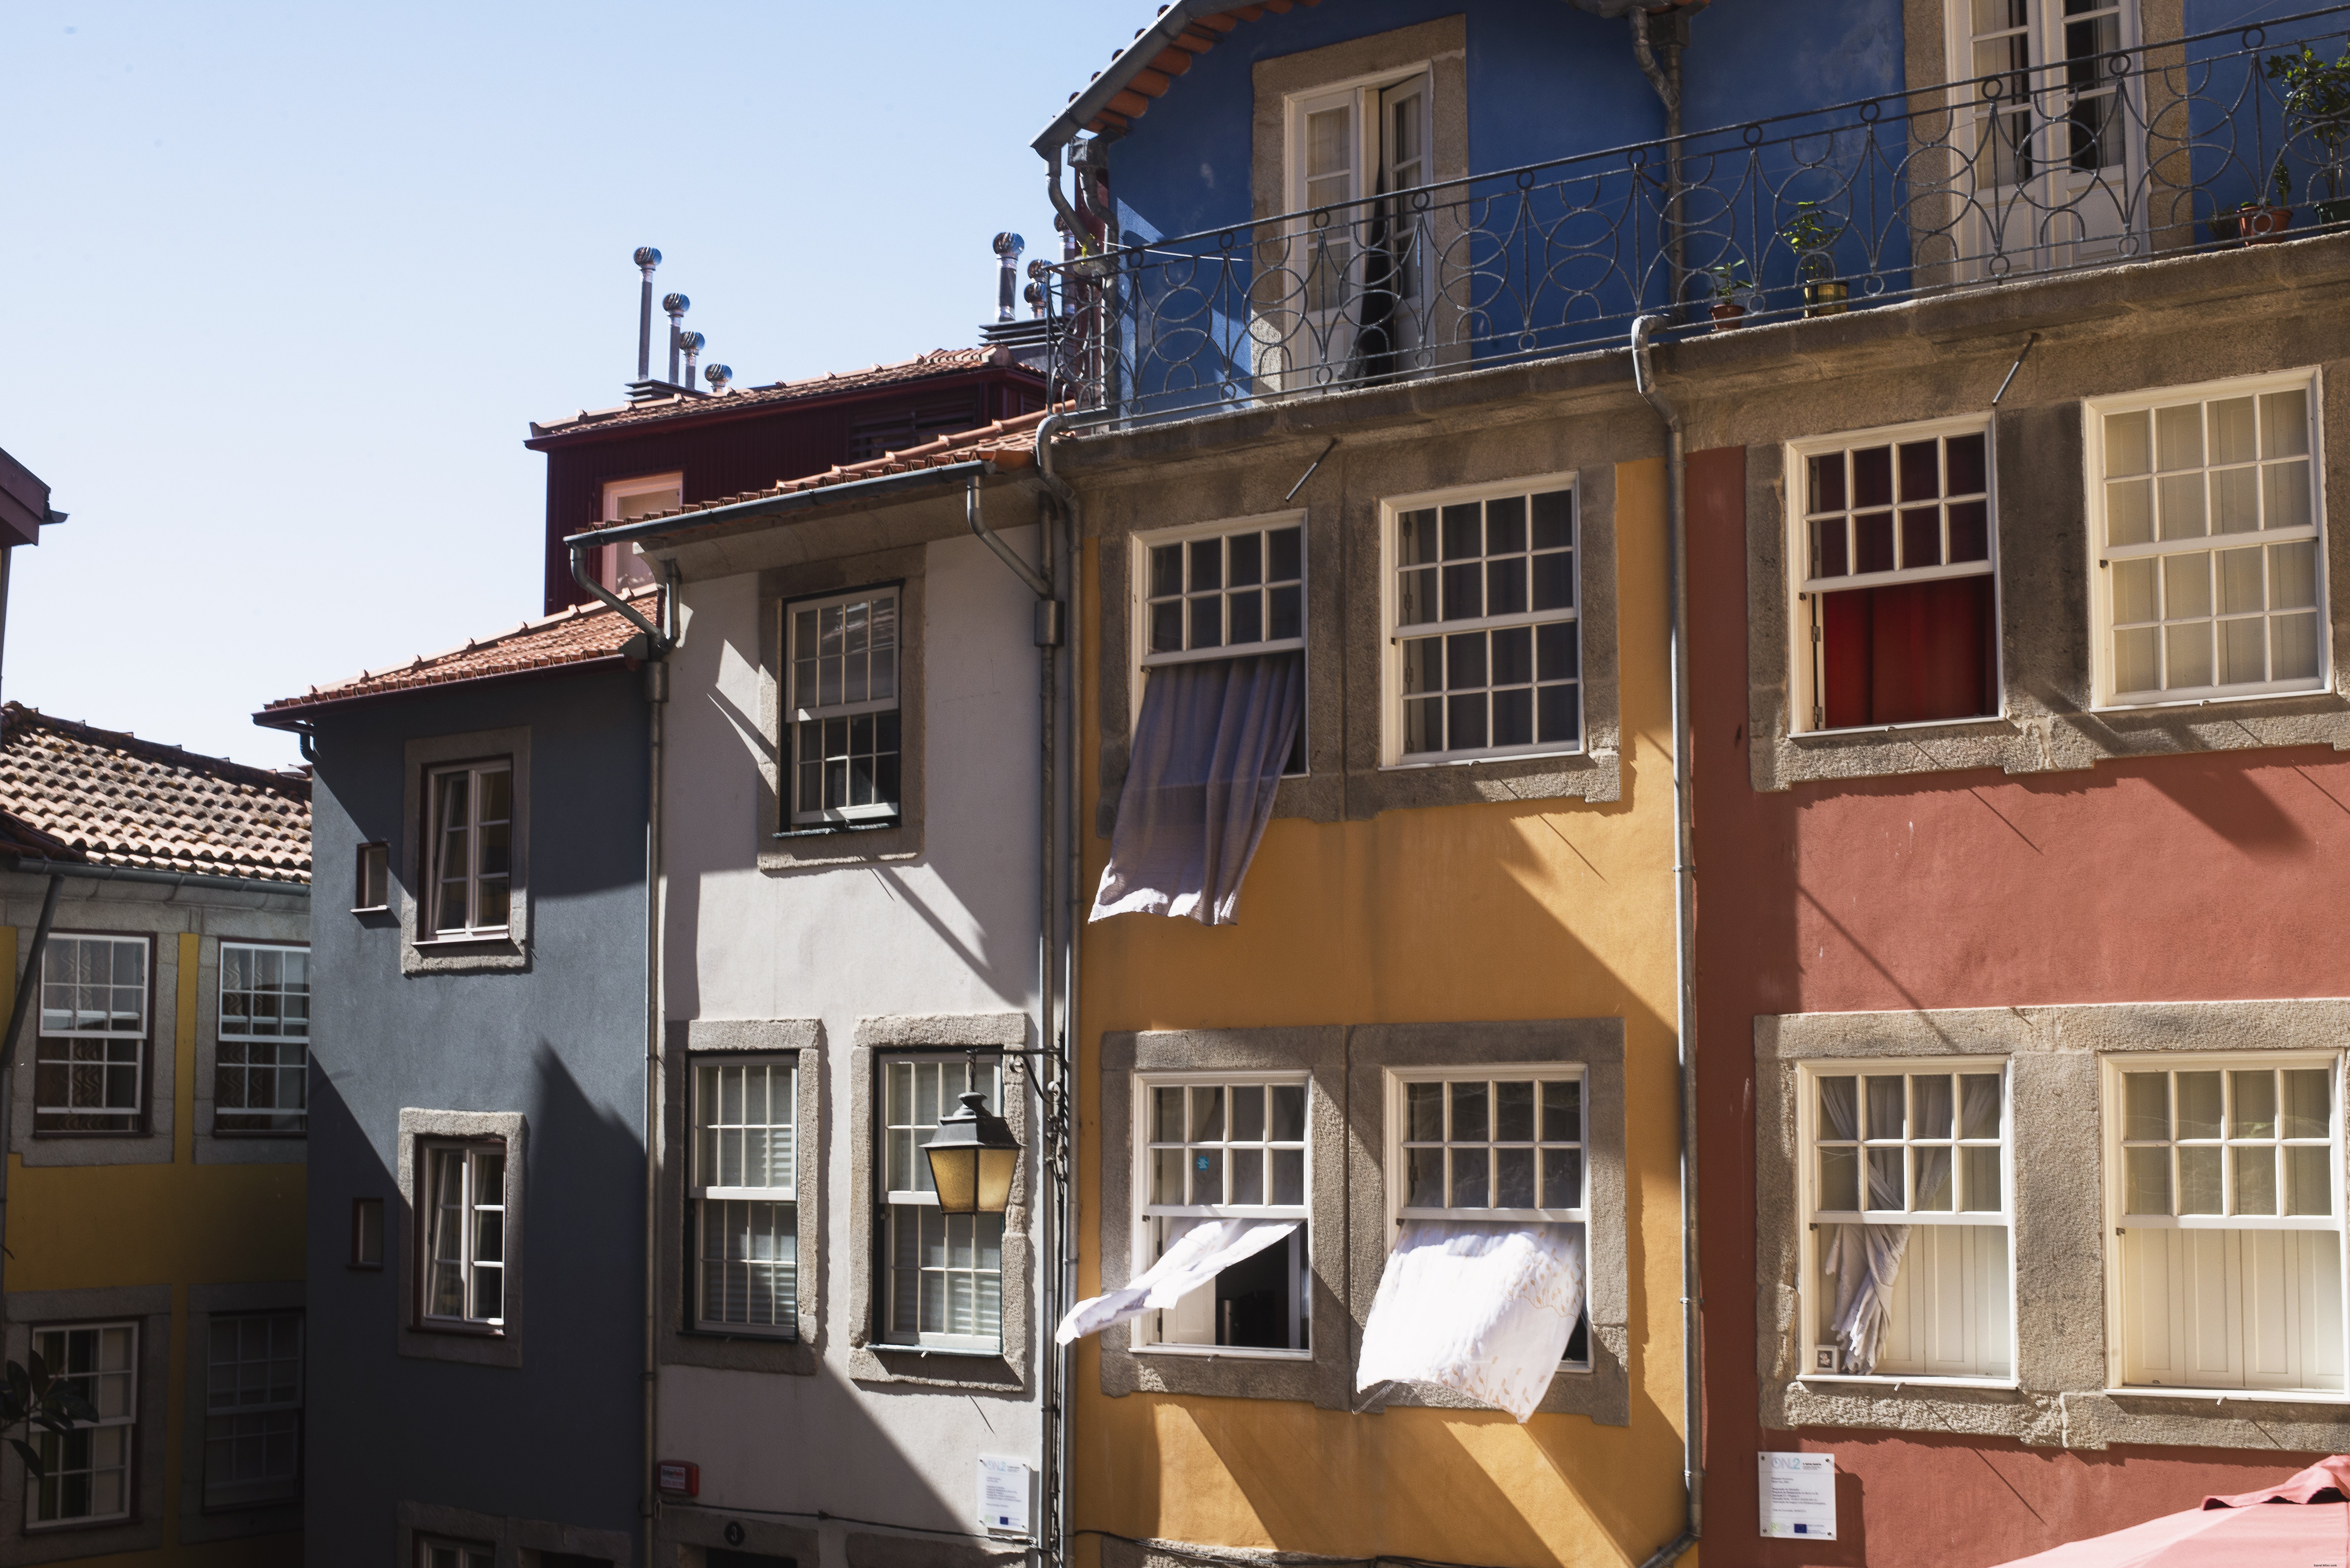 Cortinas que fluyen a través de las ventanas de estos coloridos edificios Foto